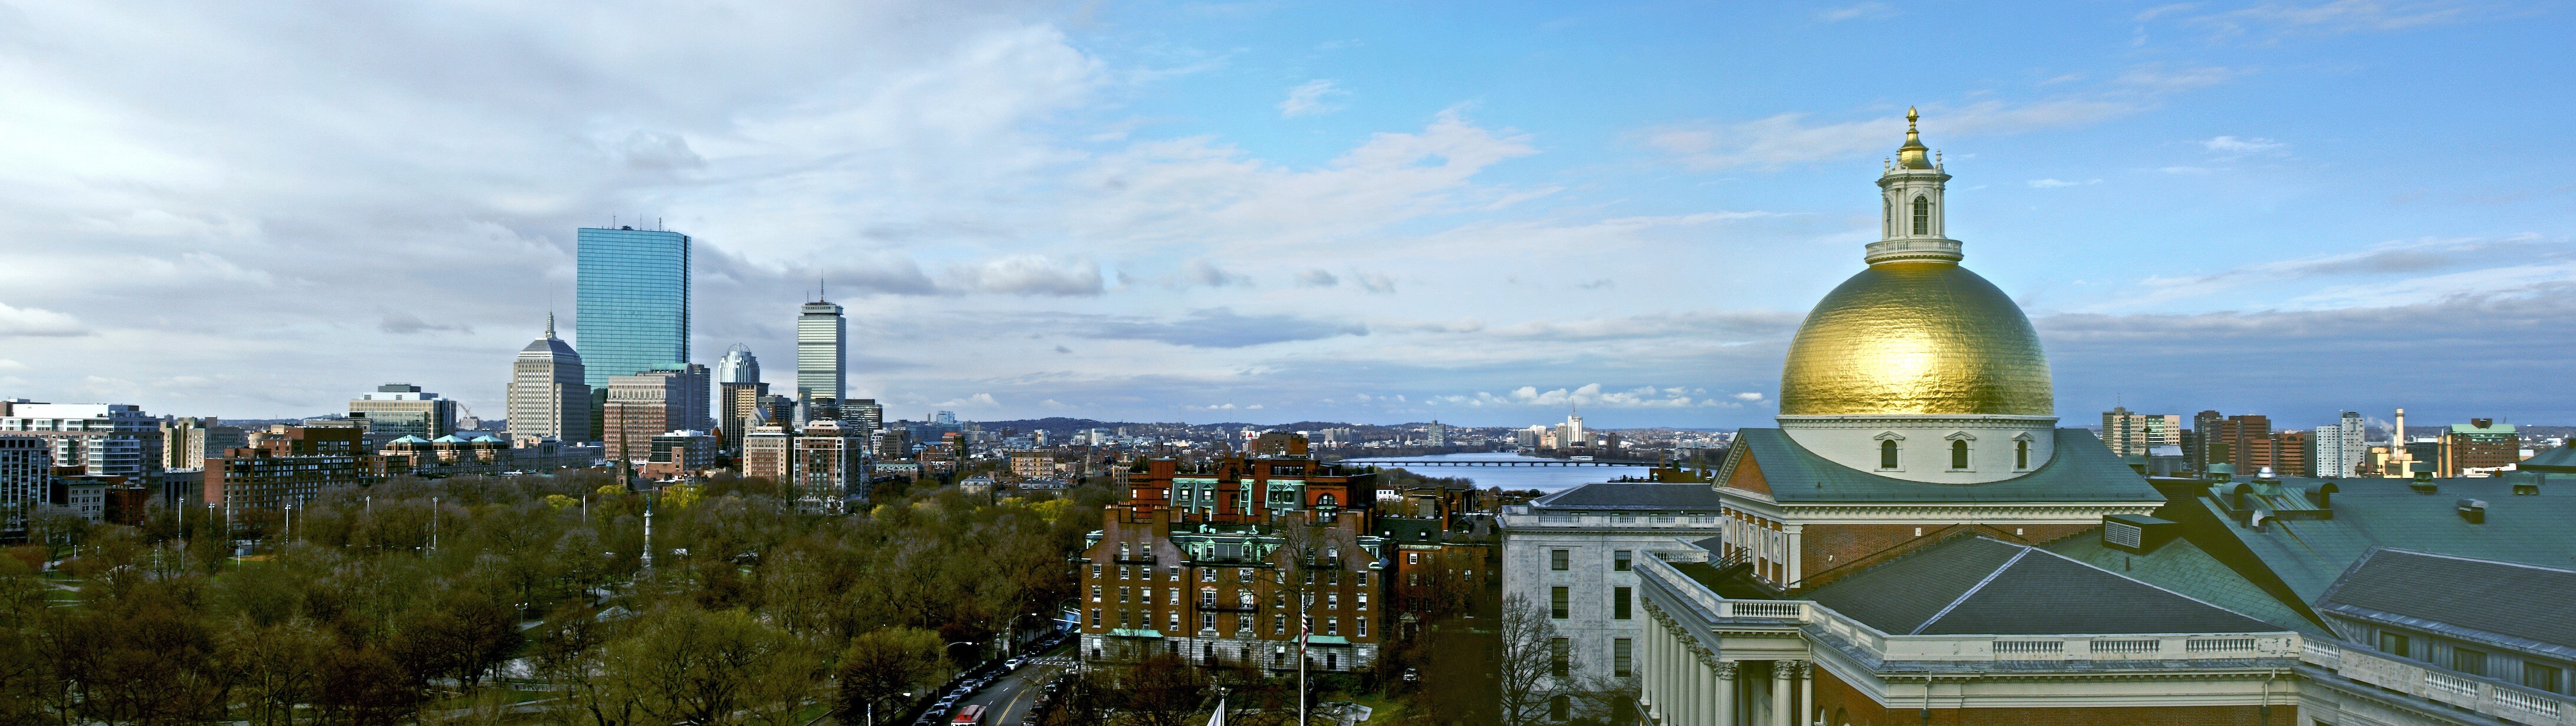 Boston skyline panorama